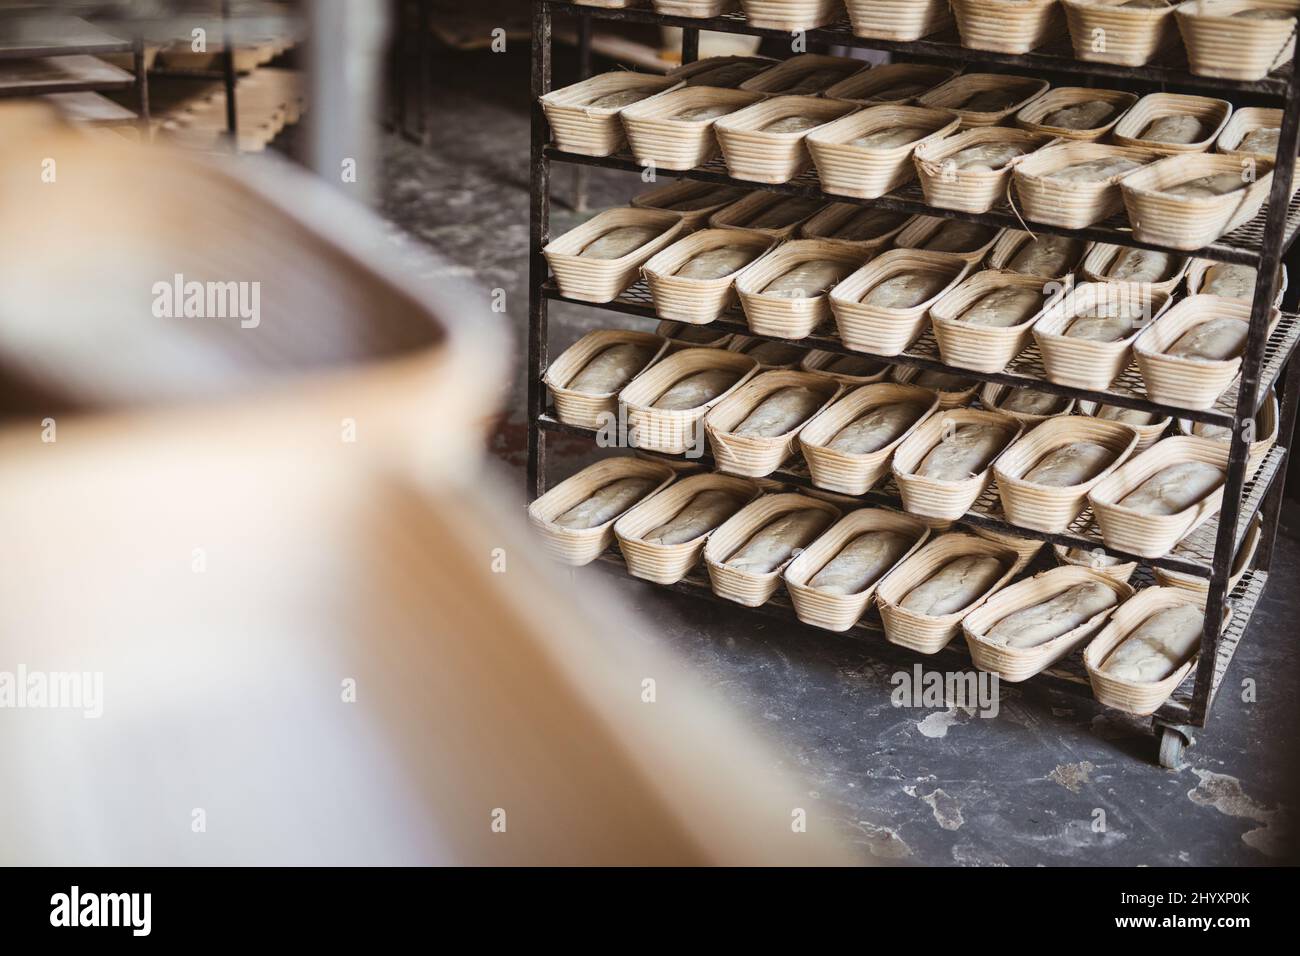 Doug dans des contenants de pain en osier disposés côte à côte dans le rack à la boulangerie Banque D'Images